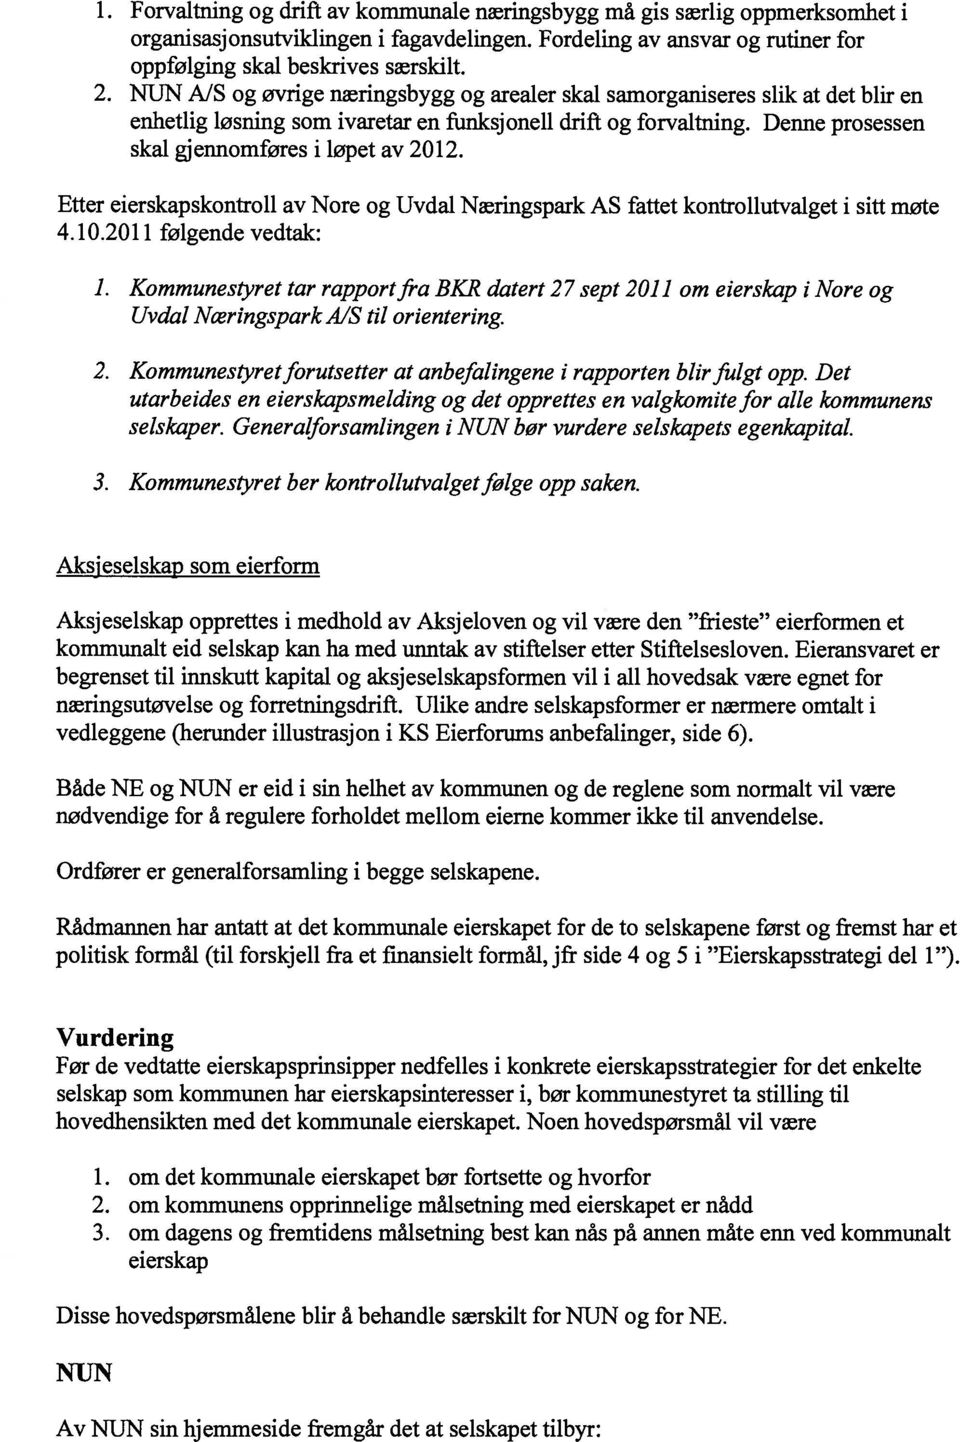 Etter eierskapskontroll av Nore og Uvdal Næringspark AS fattet kontrollutvalget i sitt møte 4.10.2011 følgende vedtak: 1. Kommunestyret tar rapportfra BK]?